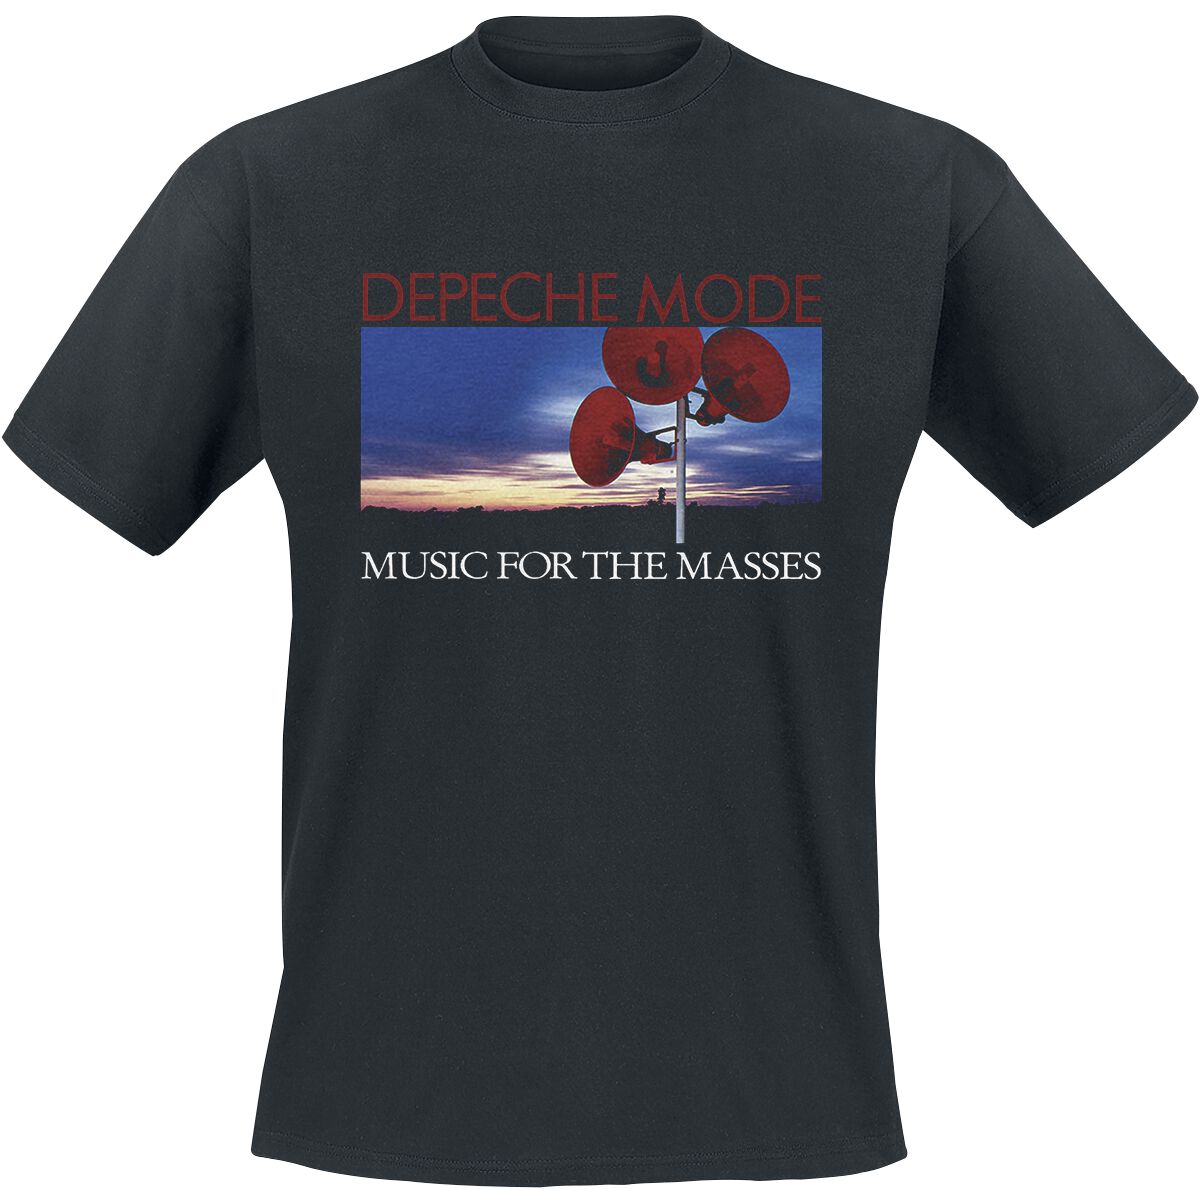 T-Shirt Manches courtes de Depeche Mode - Music for the masses - S à 4XL - pour Homme - noir